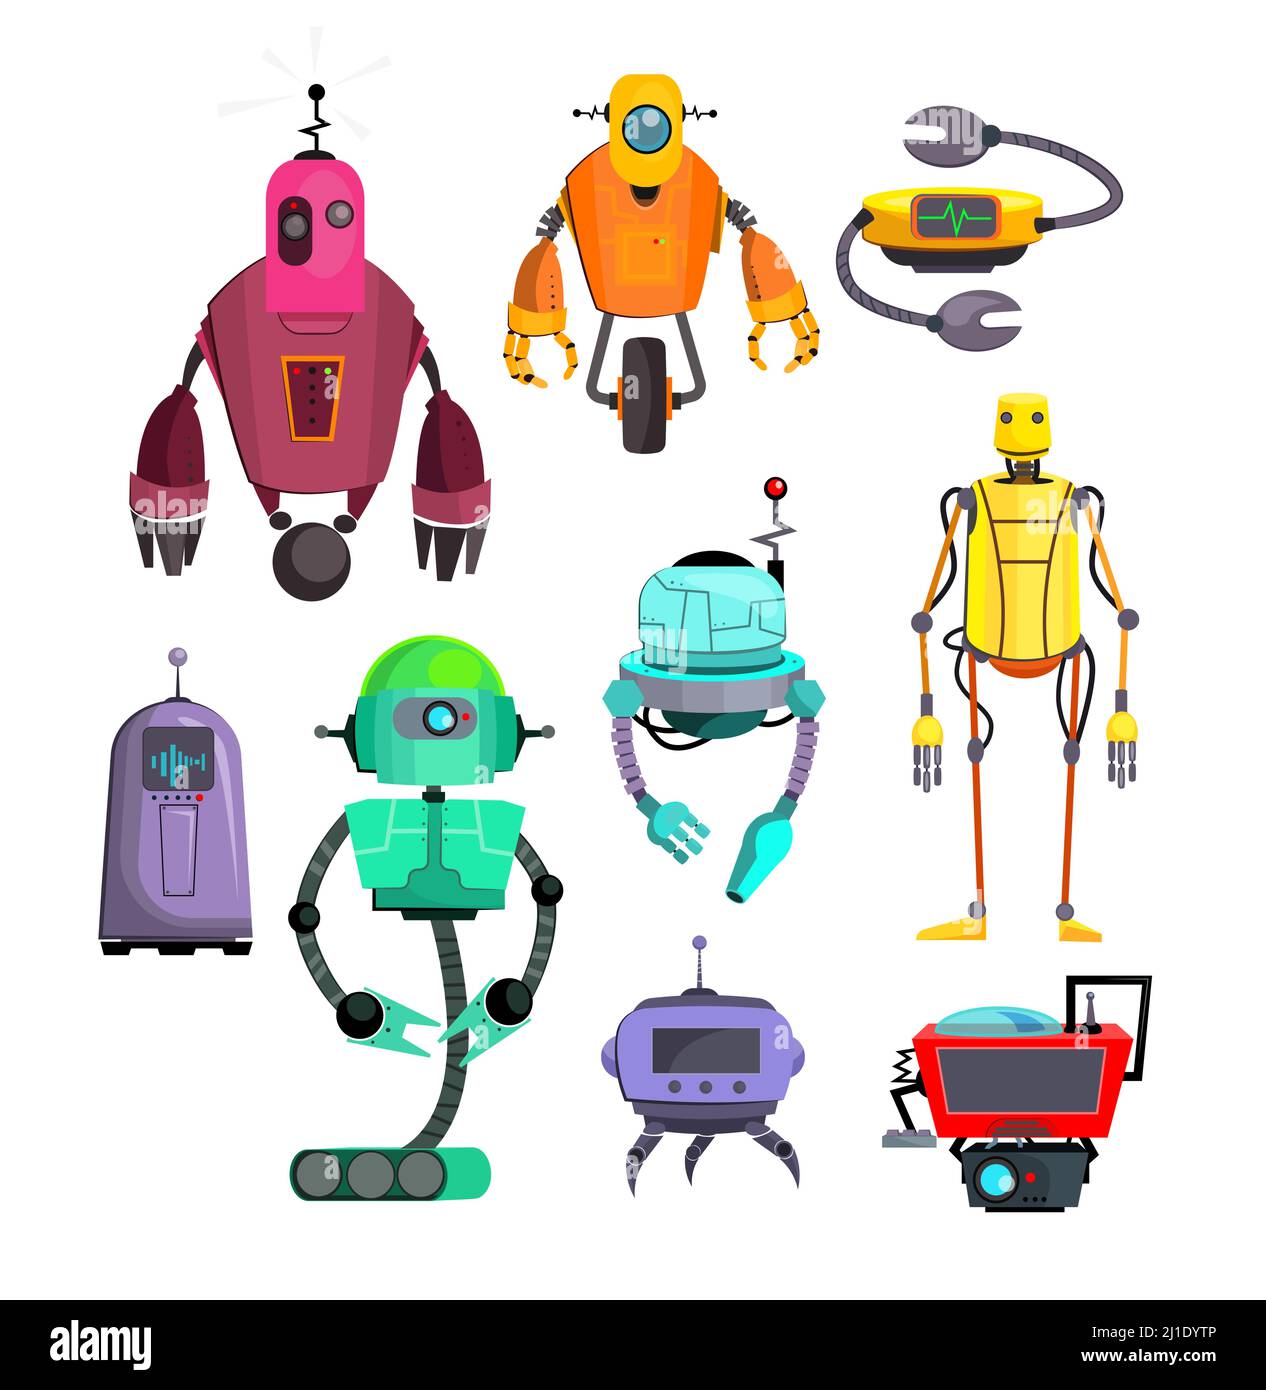 Robot colorati immagini e fotografie stock ad alta risoluzione - Alamy